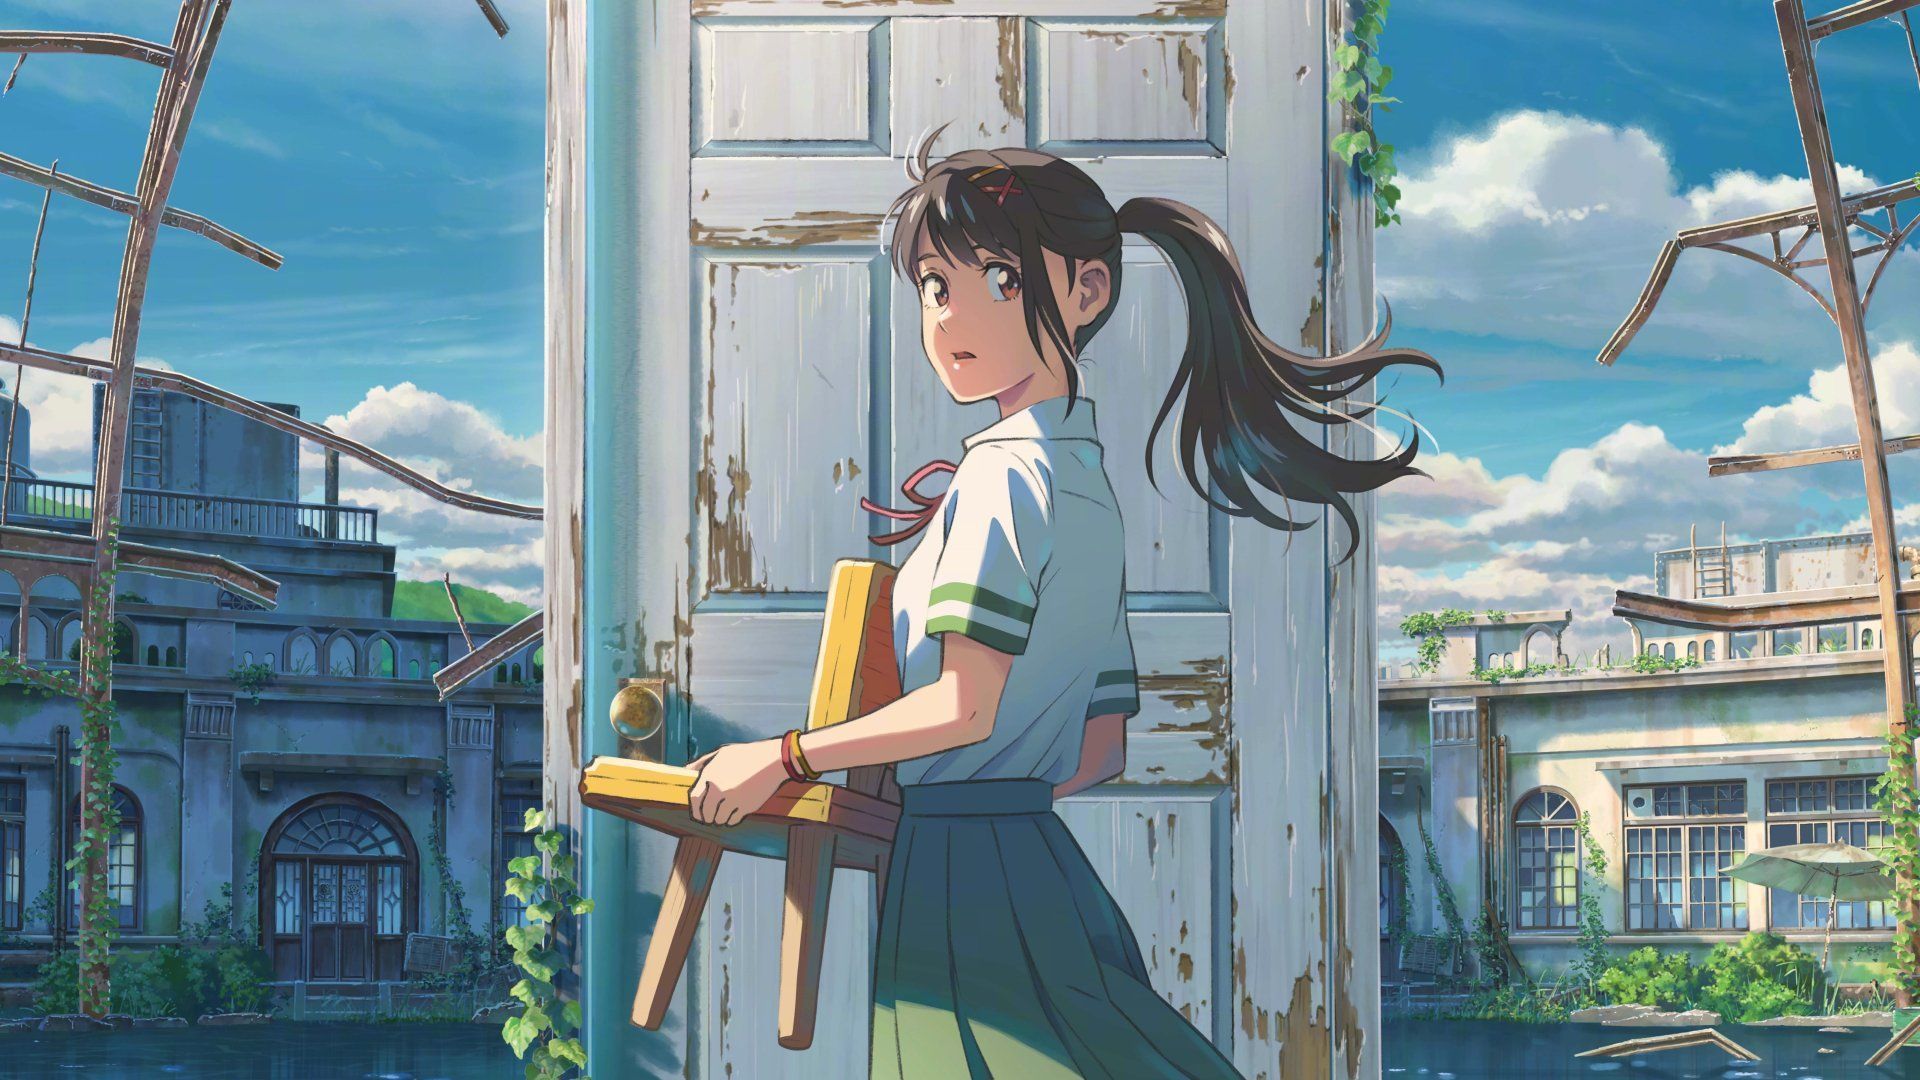 One of the promotional images for Makoto Shinkai